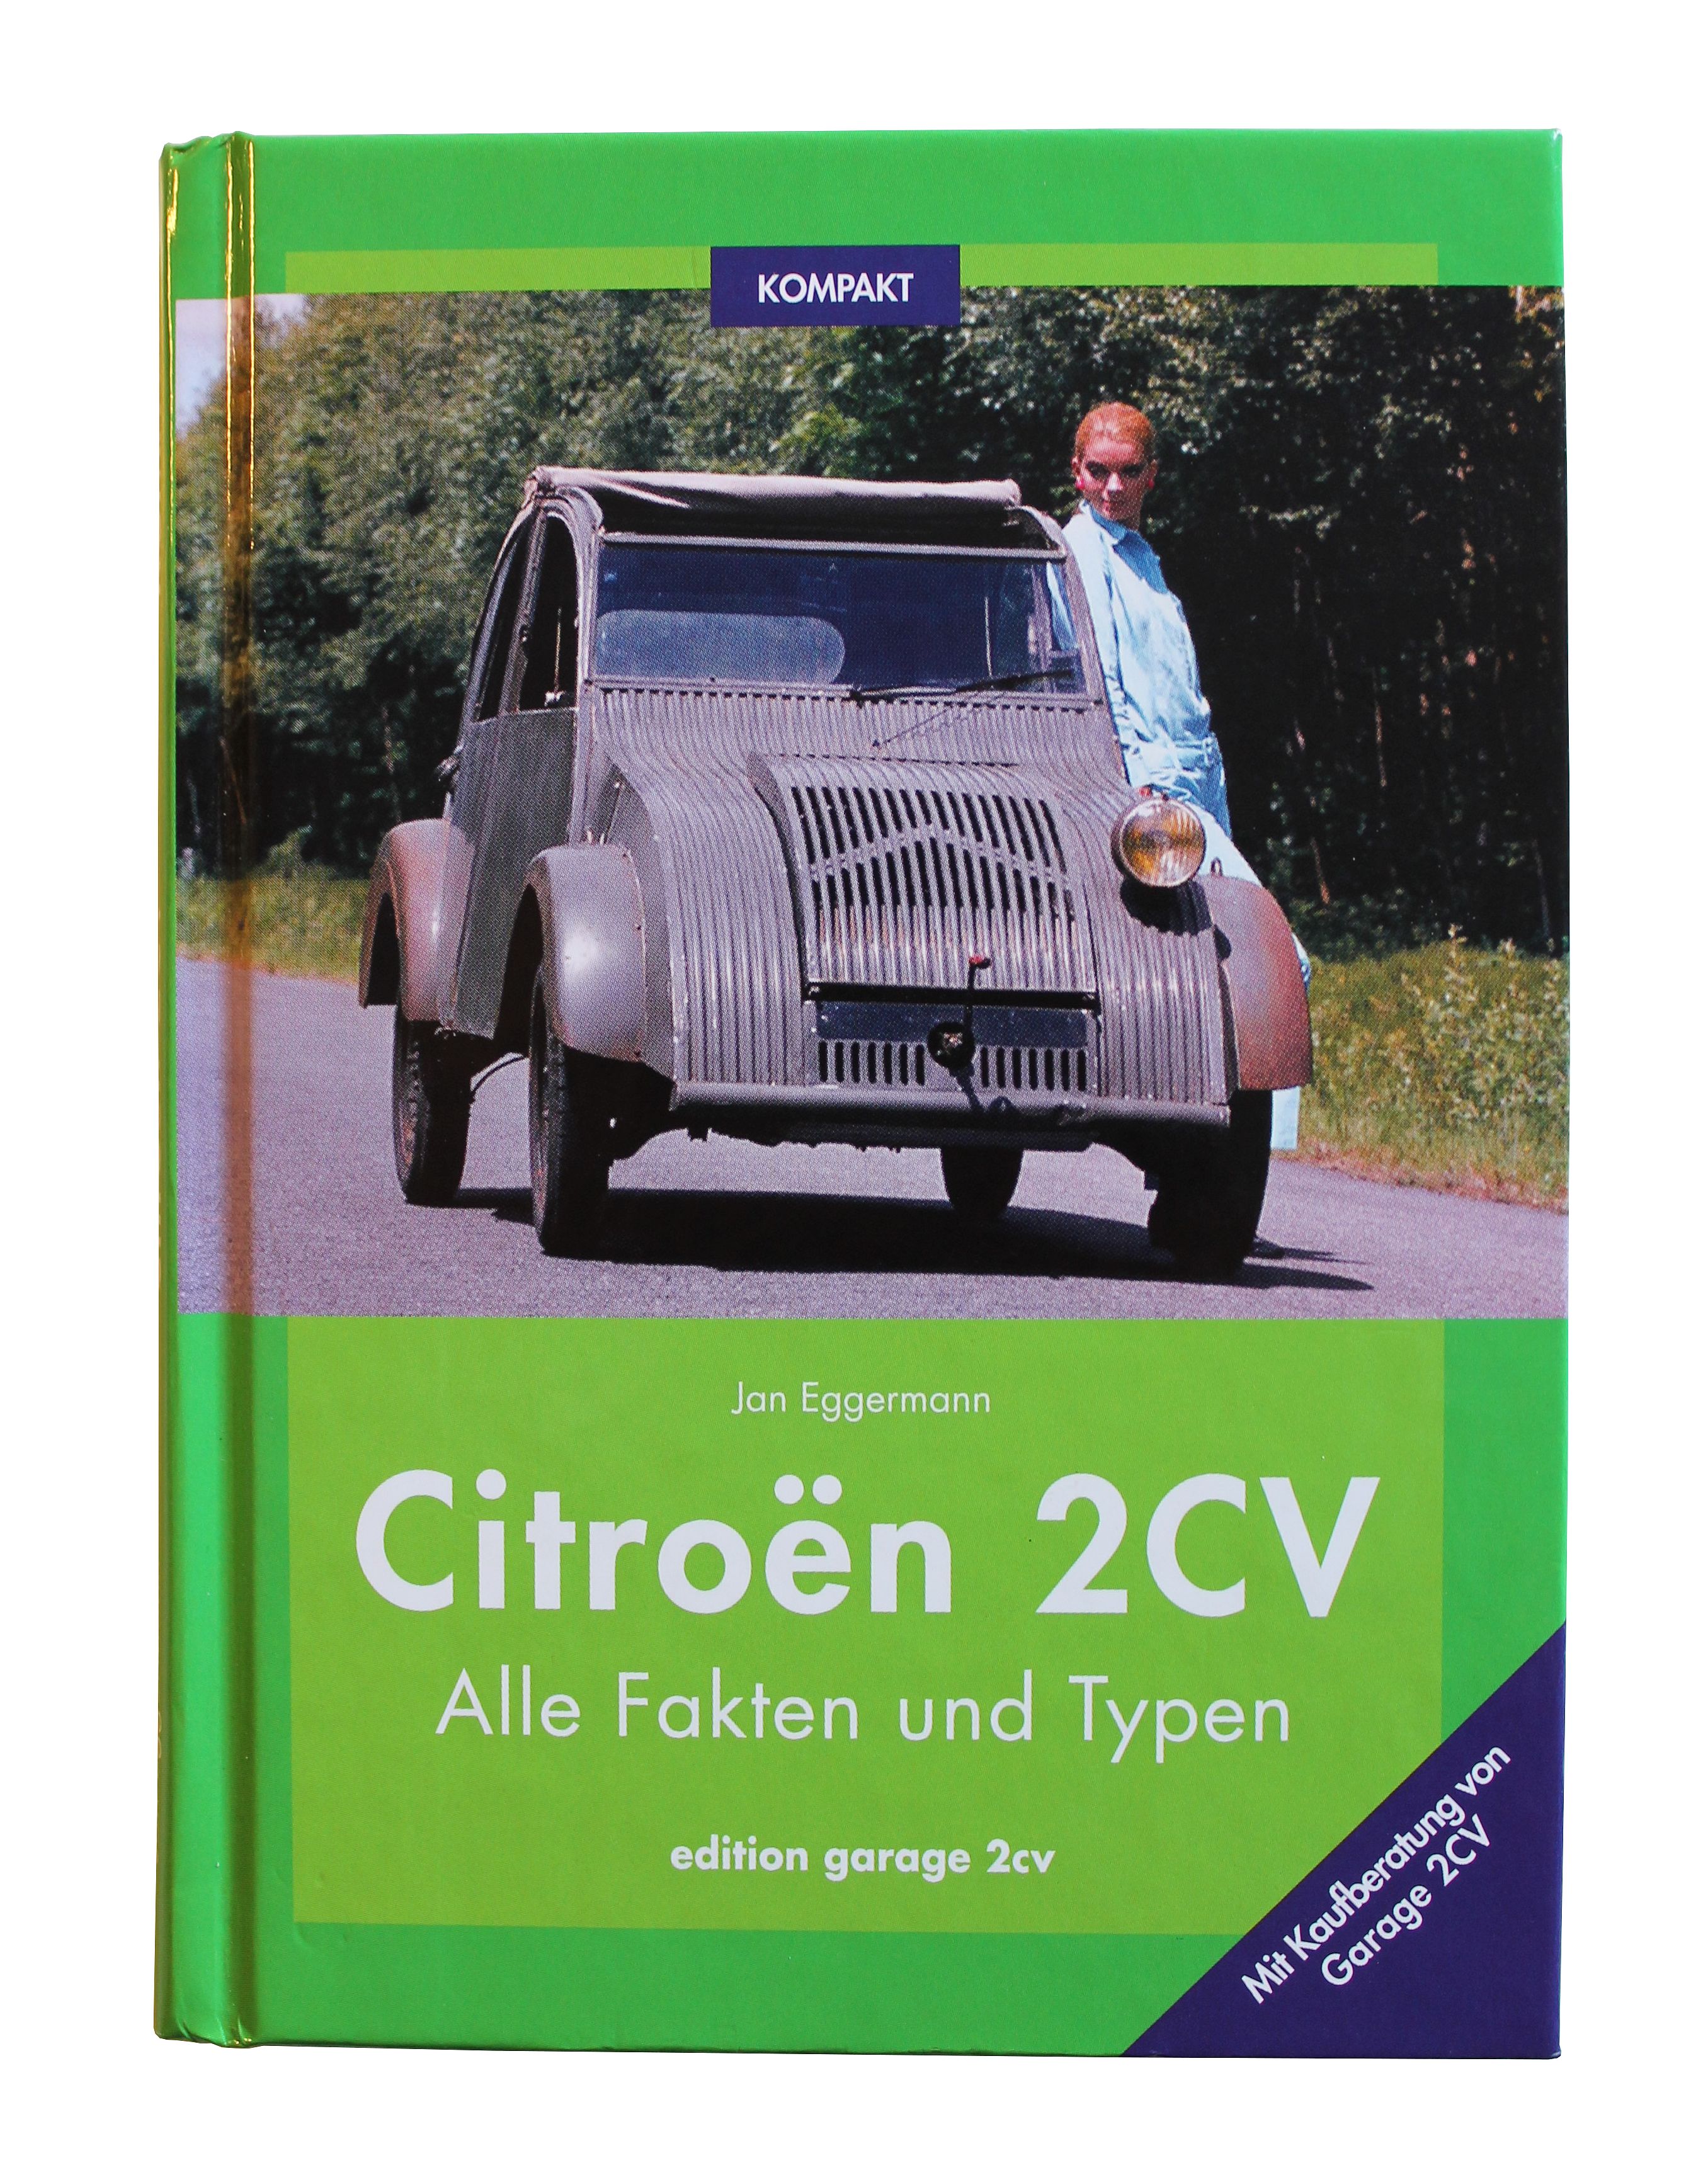 Citroën 2CV KOMPAKT Alle Fakten und Typen mit Kaufberatung Alle Fakten und Typen